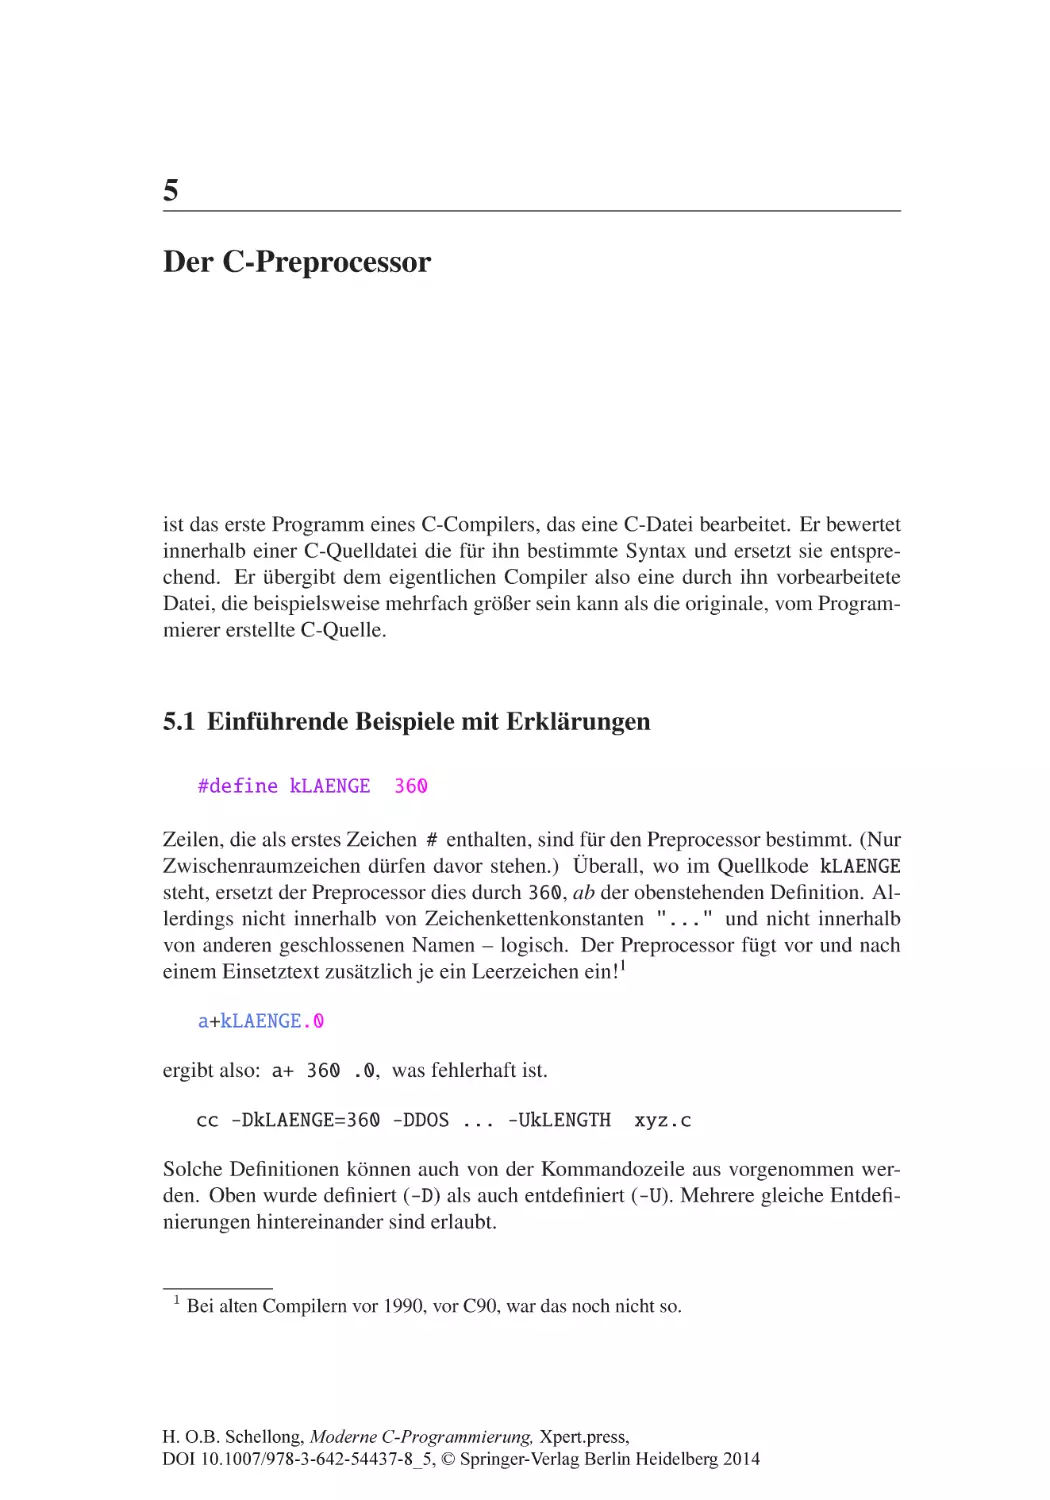 5 Der C-Preprocessor
5.1 Einführende Beispiele mit Erklärungen